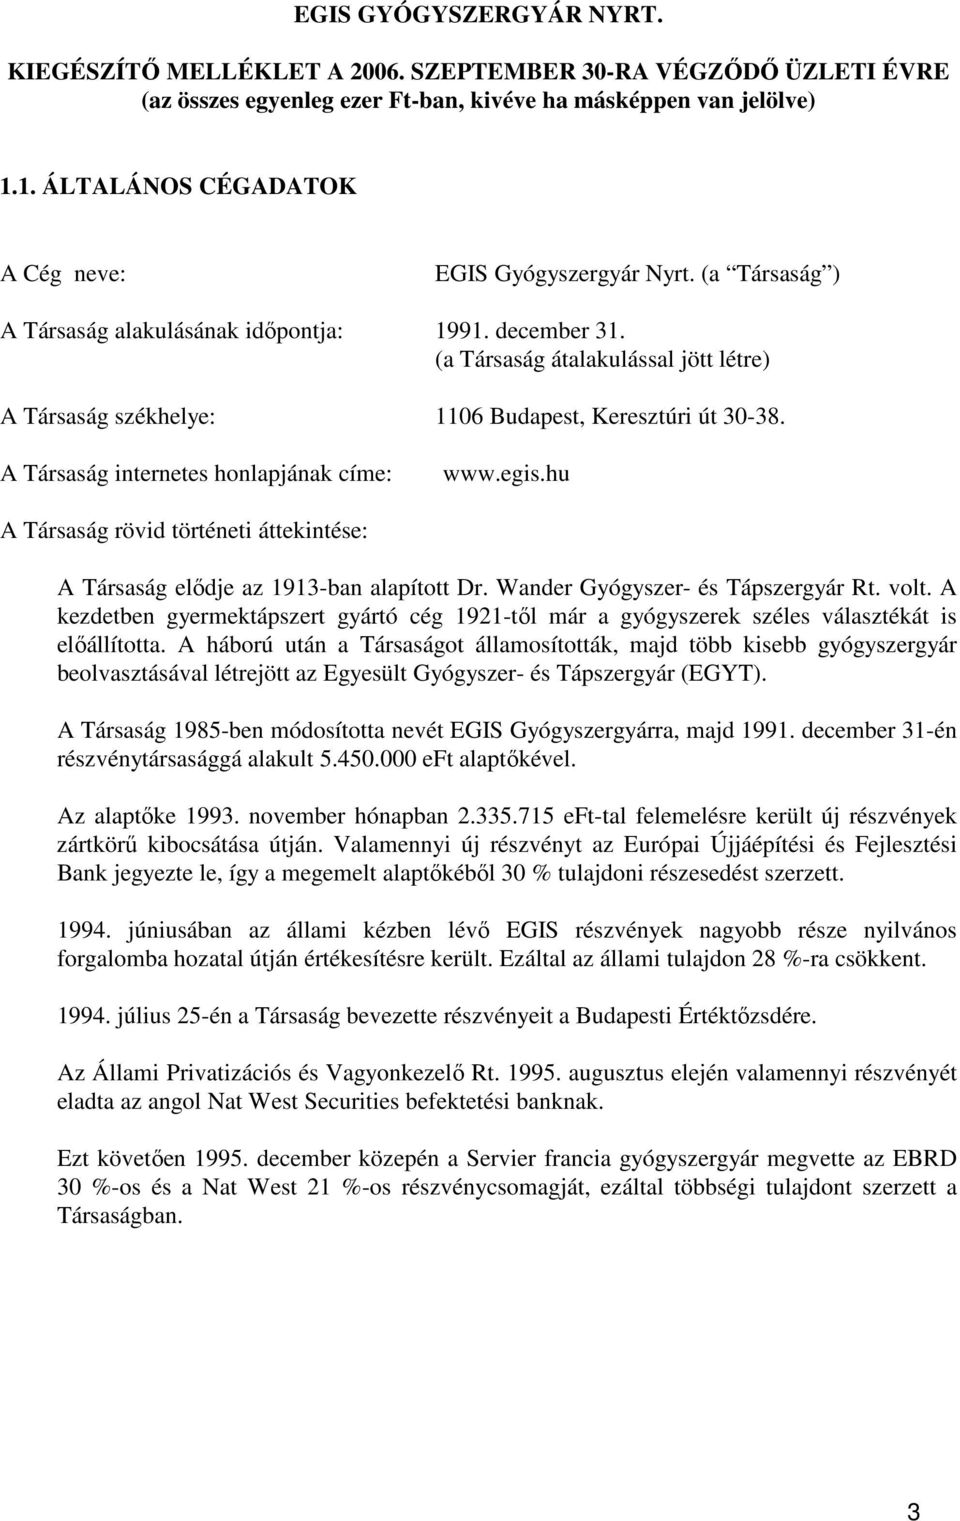 A Társaság internetes honlapjának címe: www.egis.hu A Társaság rövid történeti áttekintése: A Társaság elıdje az 1913-ban alapított Dr. Wander Gyógyszer- és Tápszergyár Rt. volt.